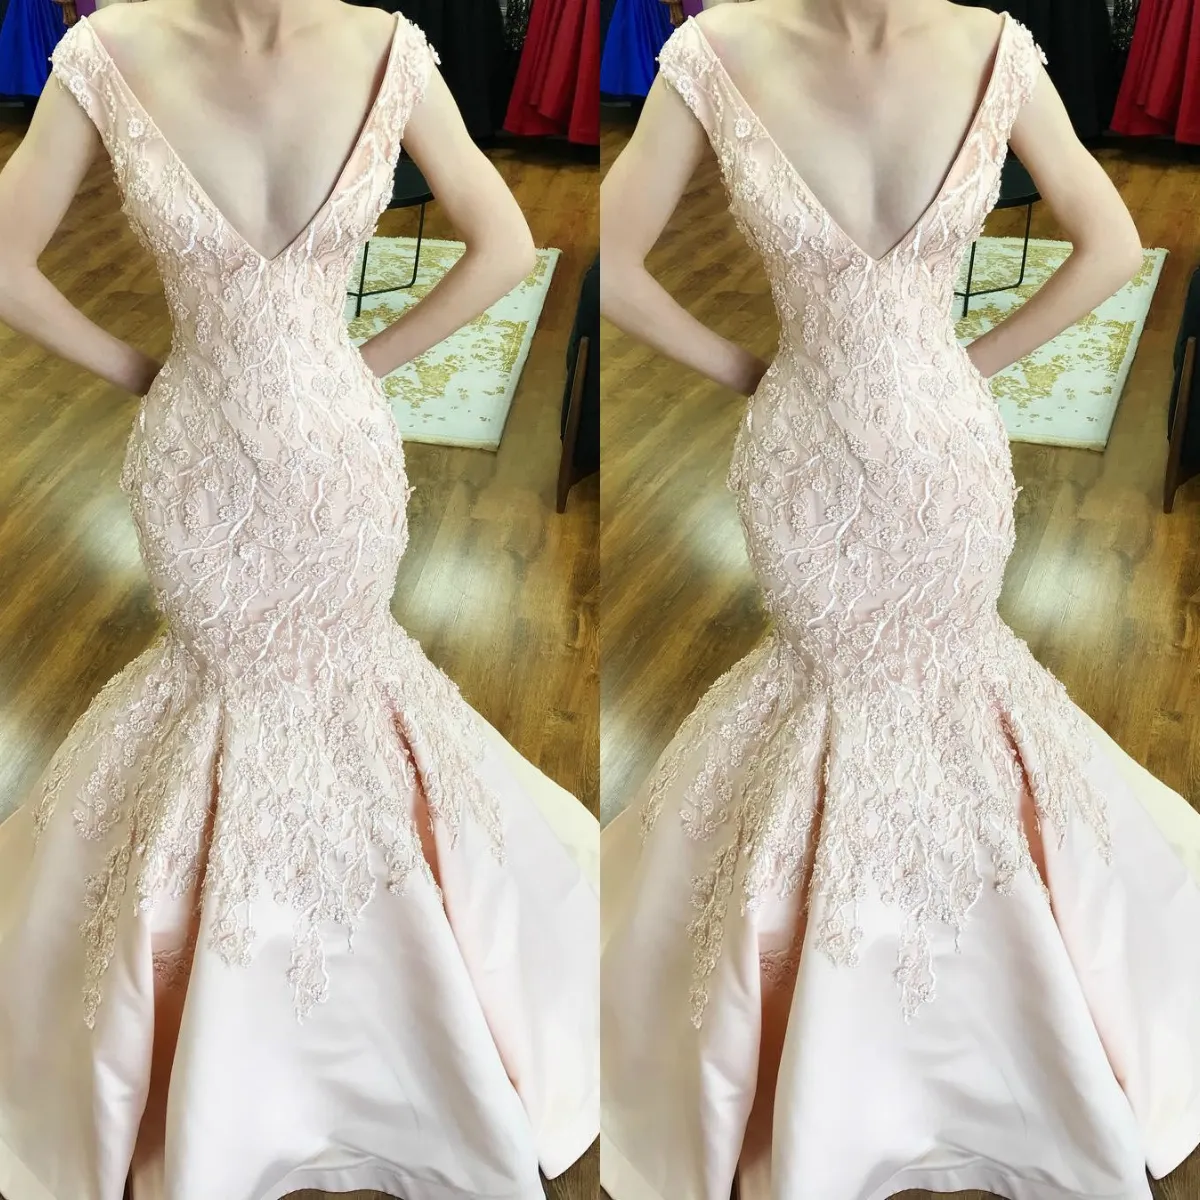 Seksowna Luksusowa Koronka Zroszony 2019 Prom Dresses Deep V Neck Mermaid Satin Formalne Suknie Wieczorowe Noble Sexy Page Cartoret Dress